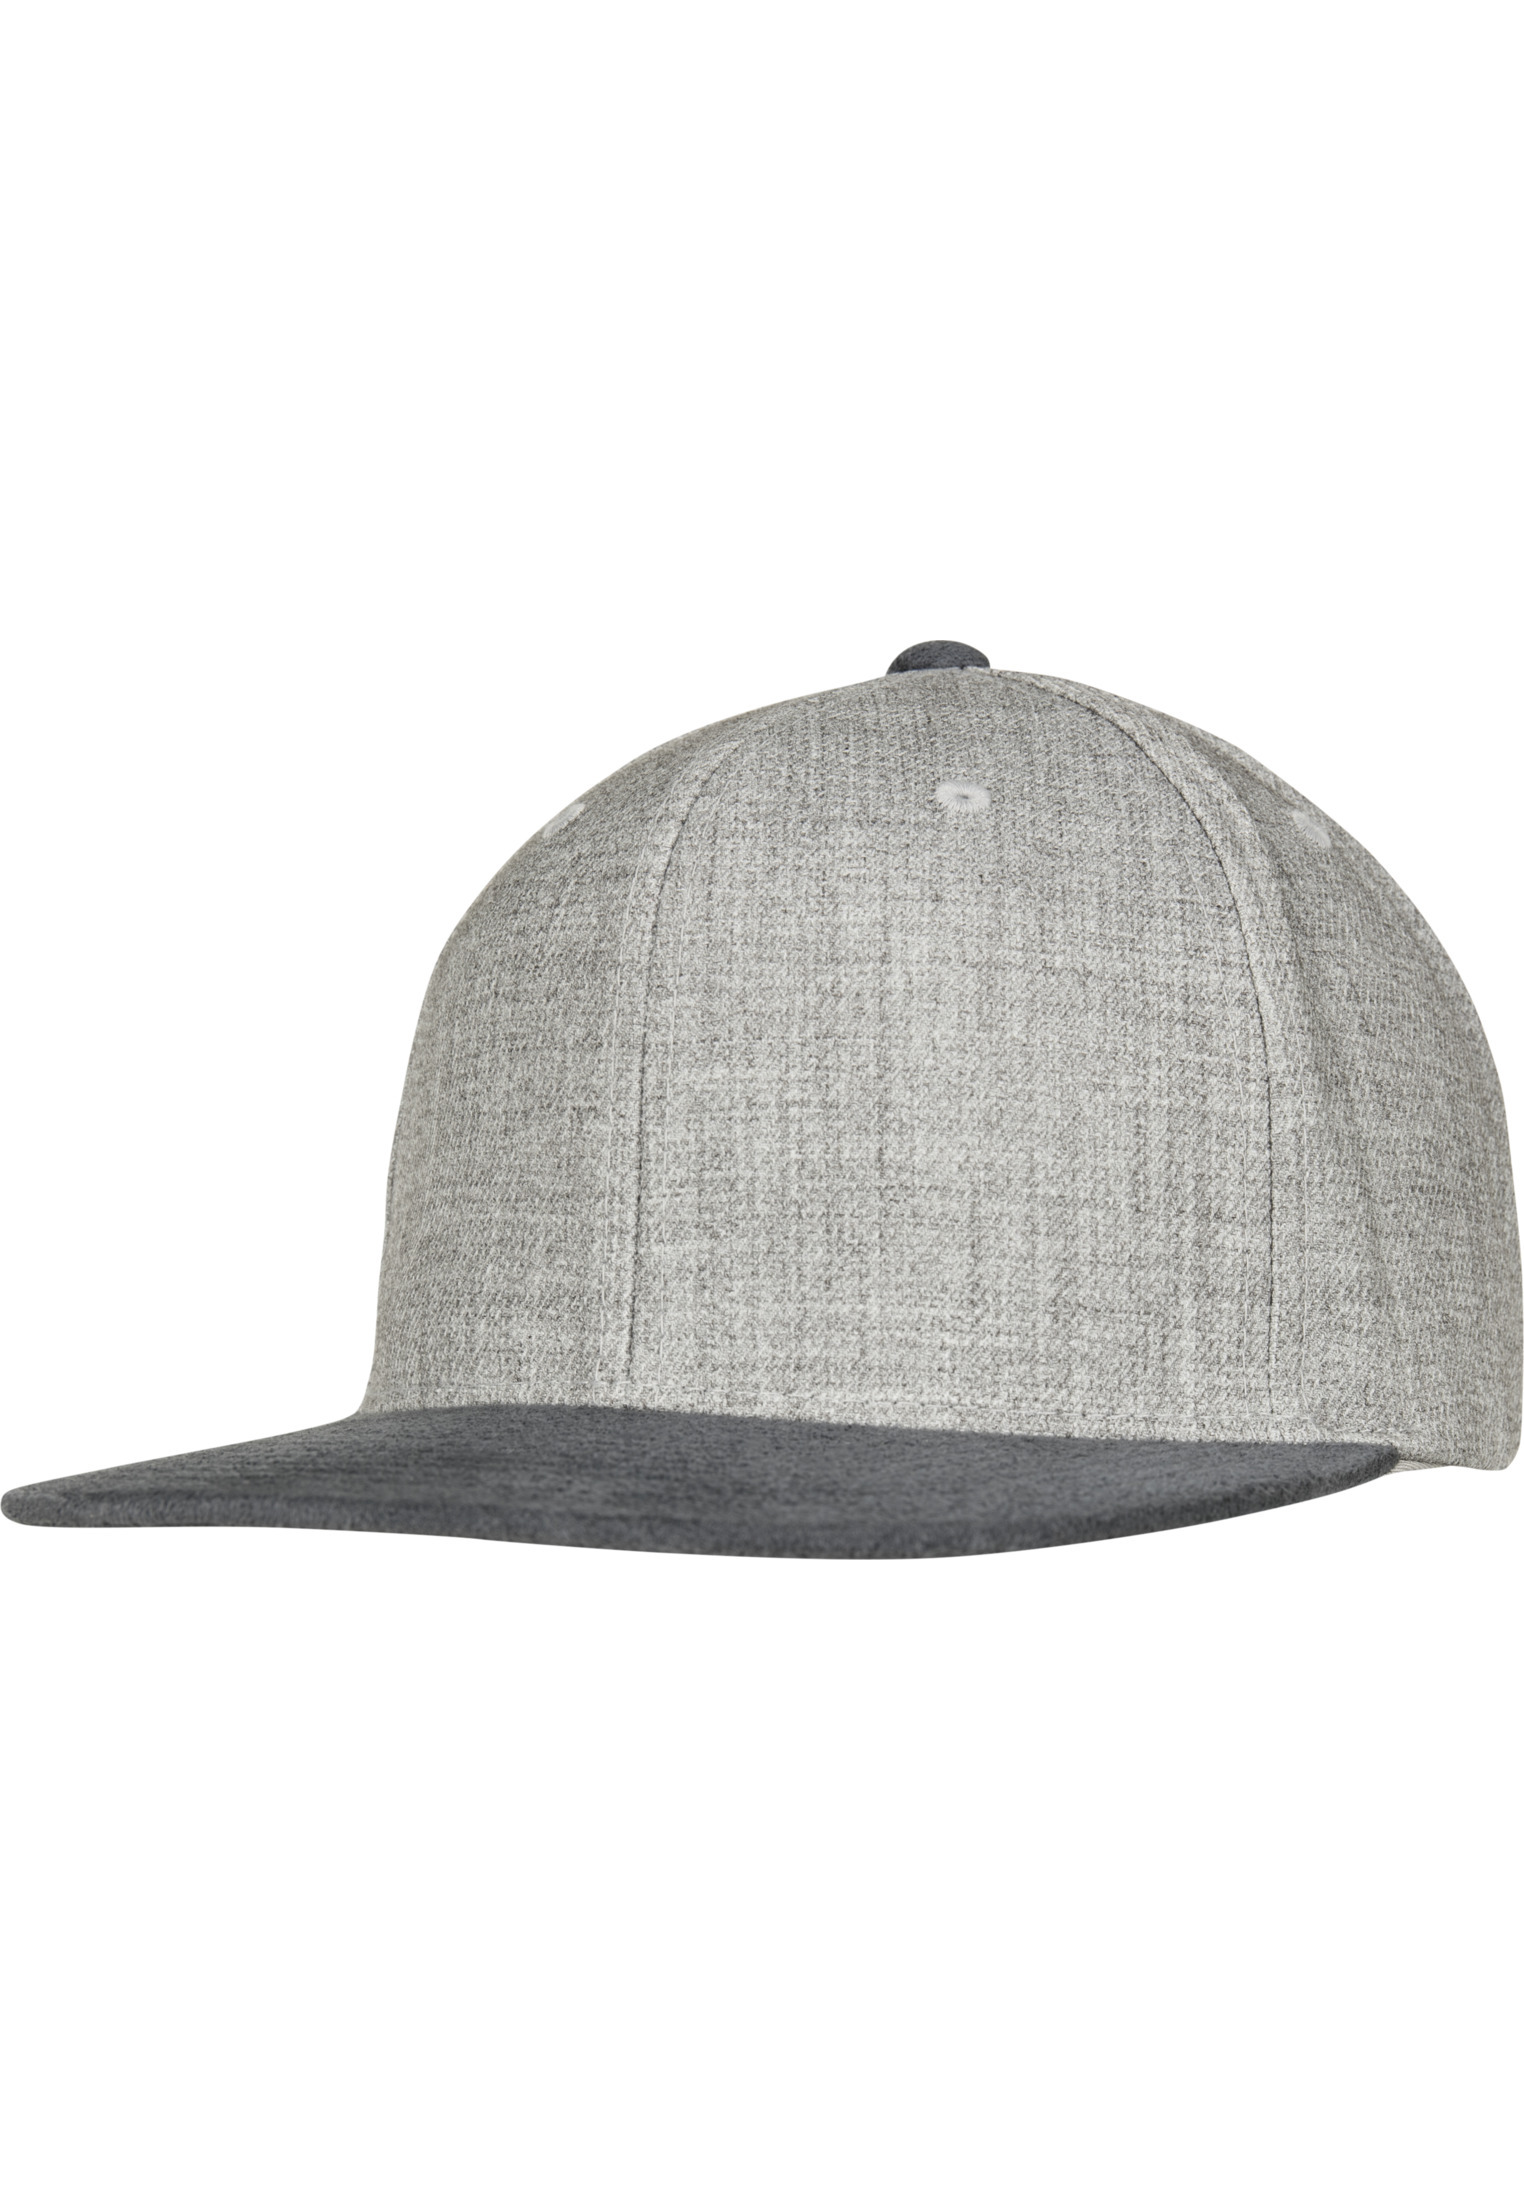 Бейсболка Flexfit Design Snapback, цвет grey/grey